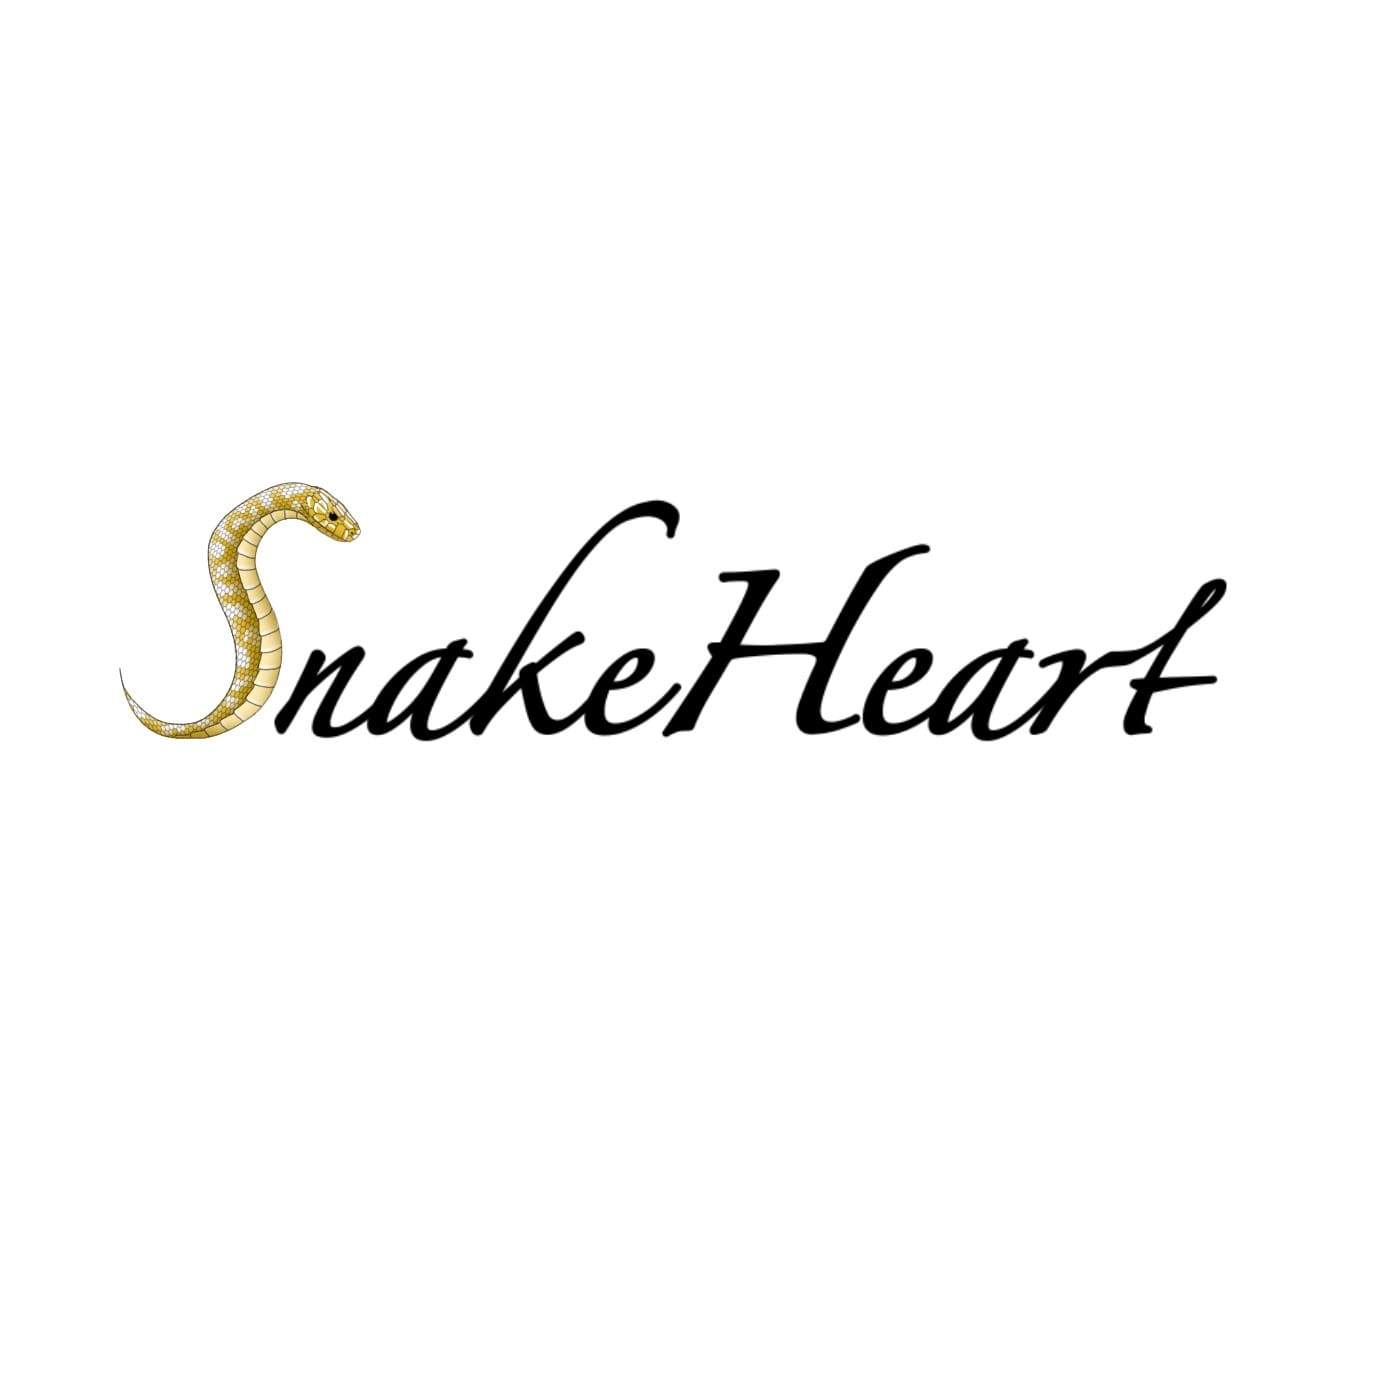 Snake Heart foto profilo